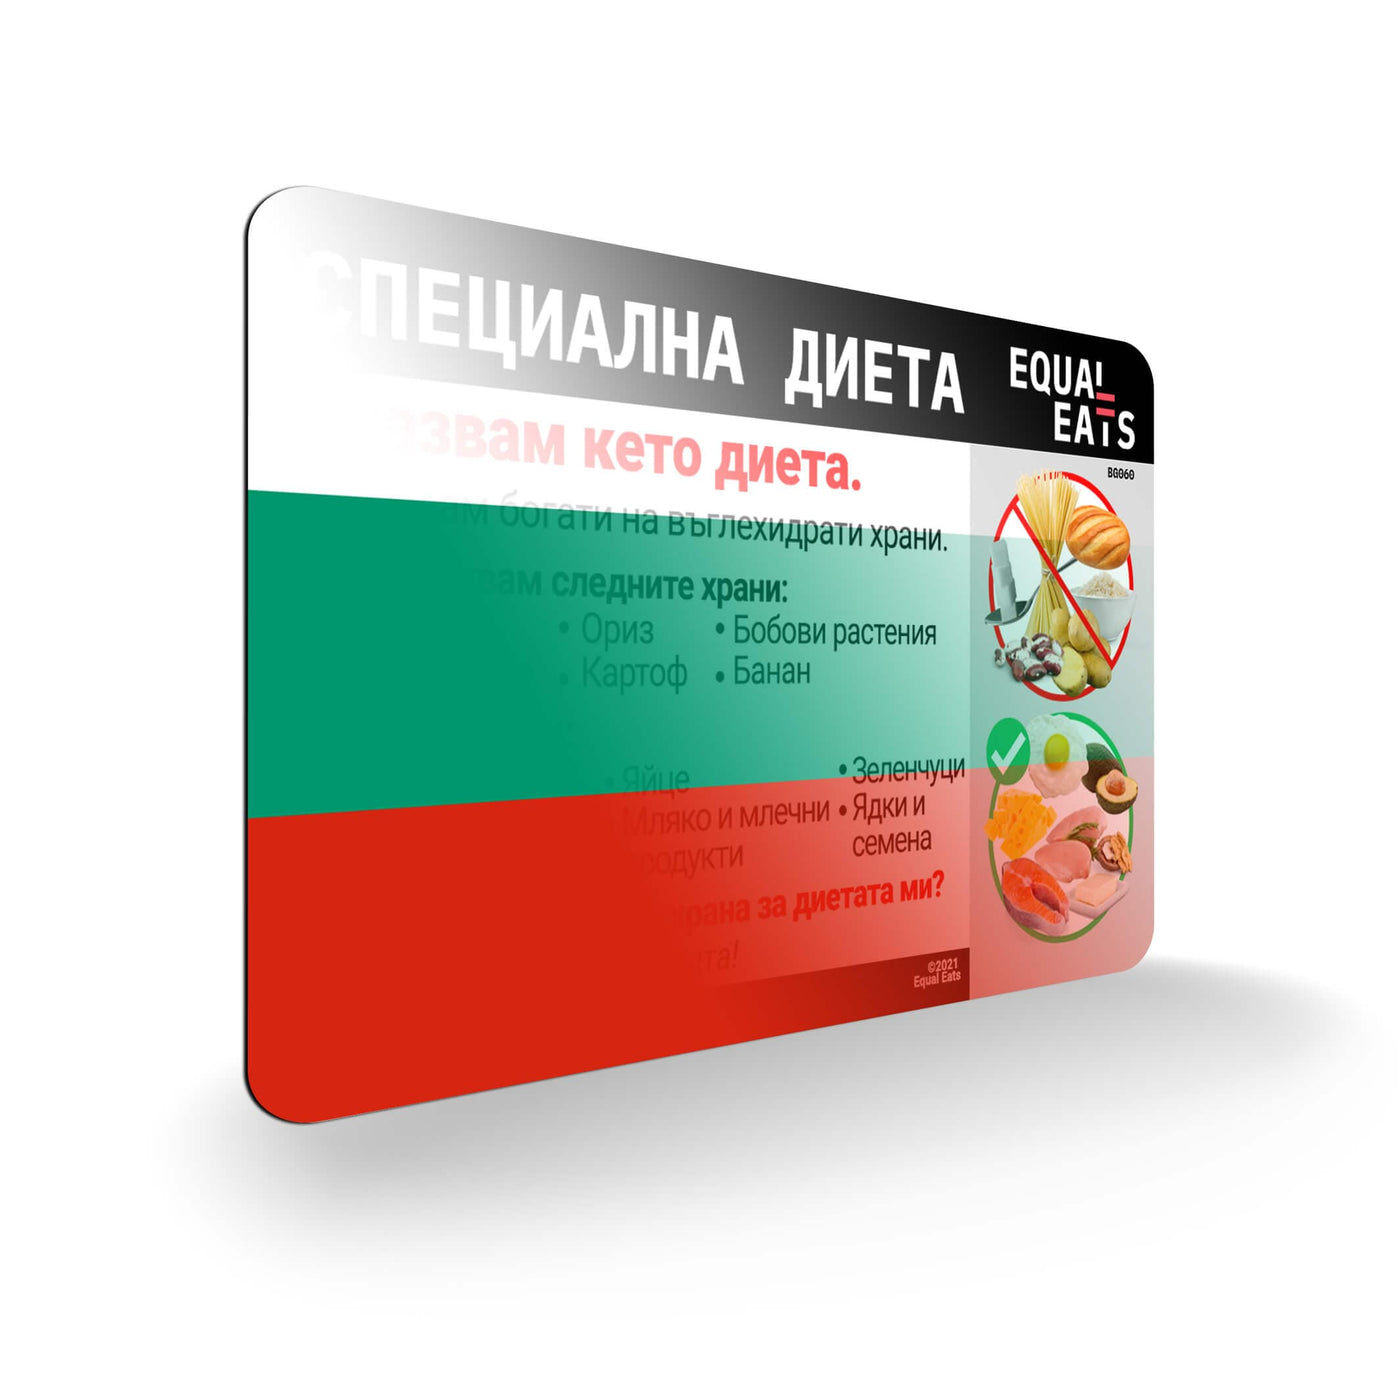 Bulgarian Keto Diet Card